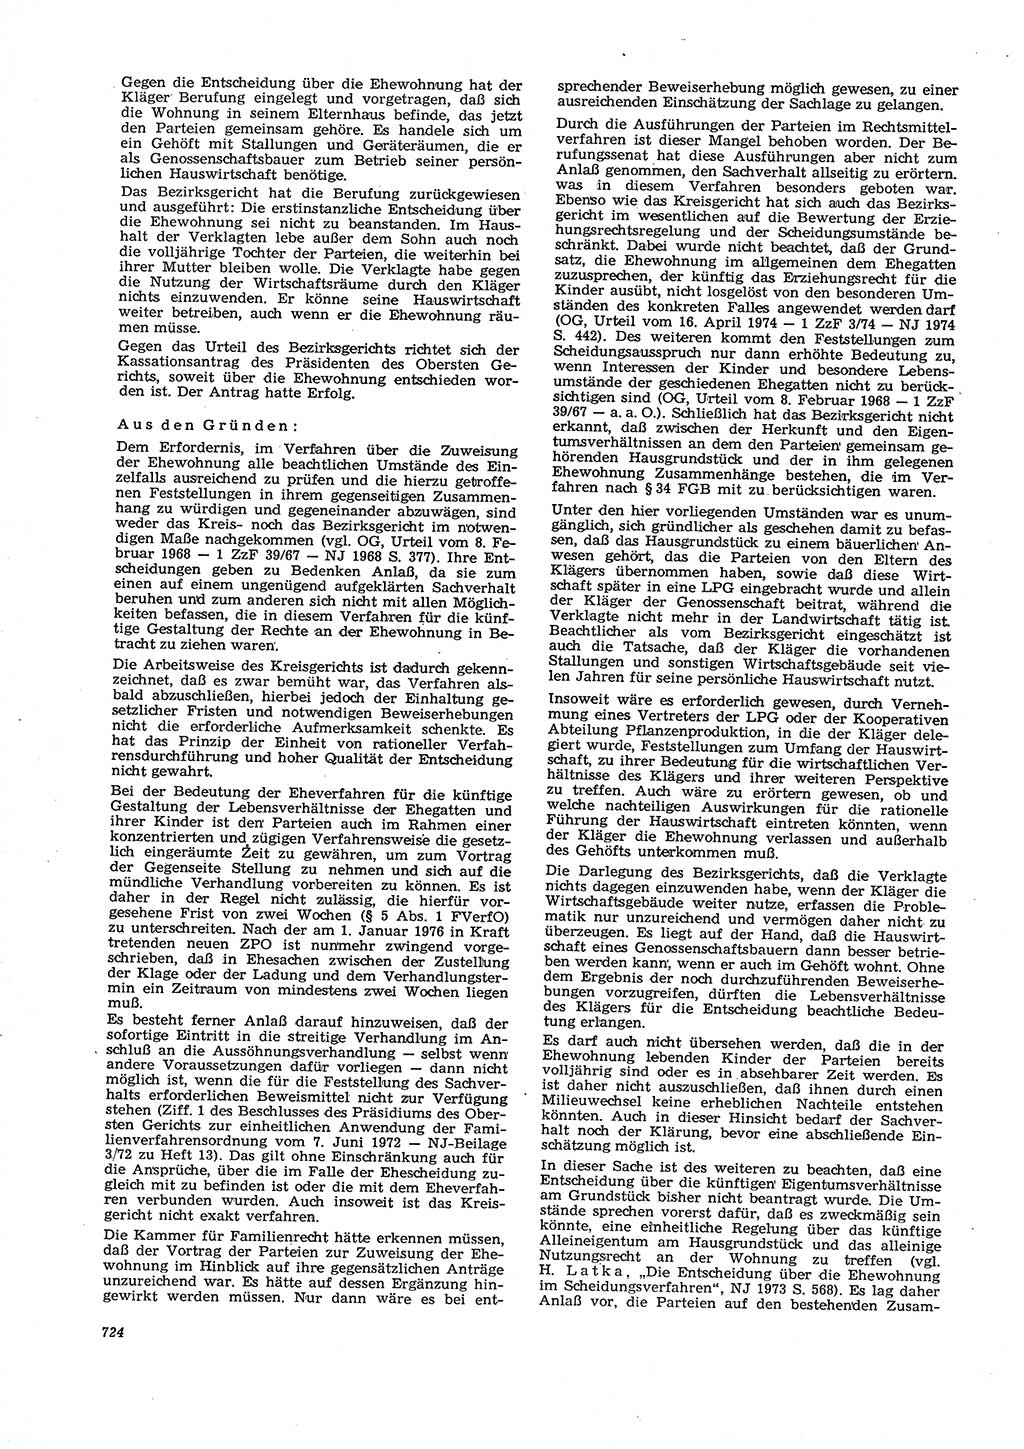 Neue Justiz (NJ), Zeitschrift für Recht und Rechtswissenschaft [Deutsche Demokratische Republik (DDR)], 29. Jahrgang 1975, Seite 724 (NJ DDR 1975, S. 724)